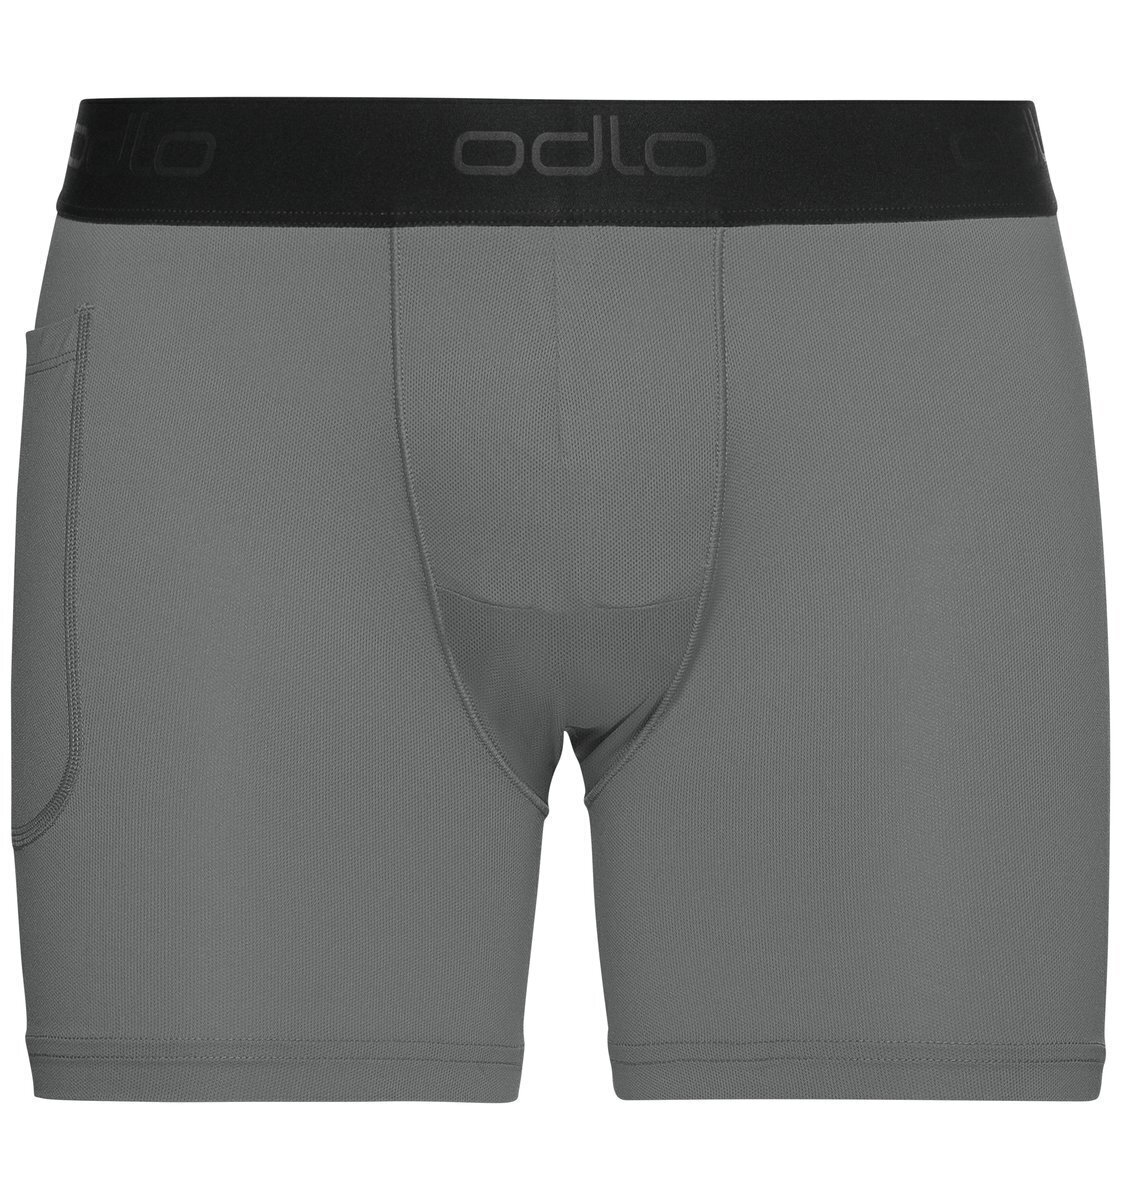 Futórövidnadrágok Odlo Active Sport Liner Shorts Steel Grey M Futórövidnadrágok